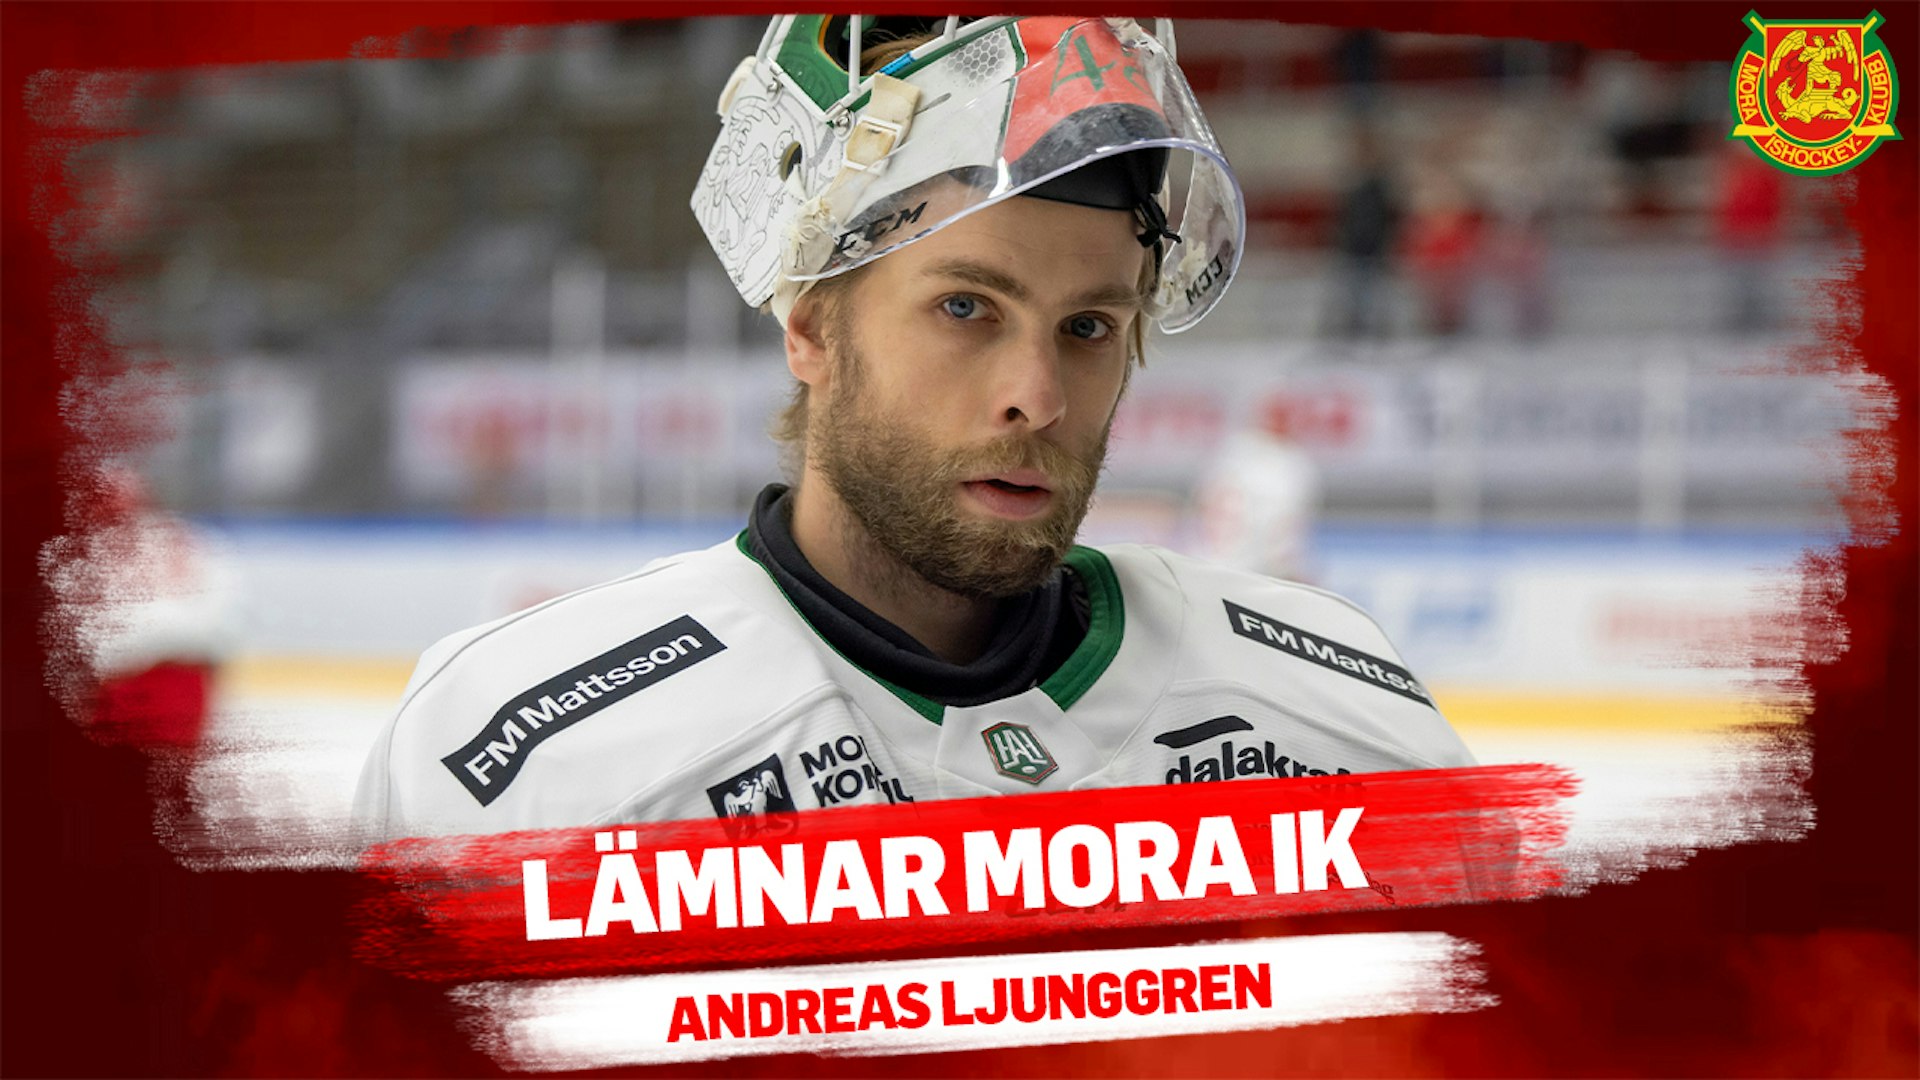 Andreas Ljunggren lämnar Mora IK